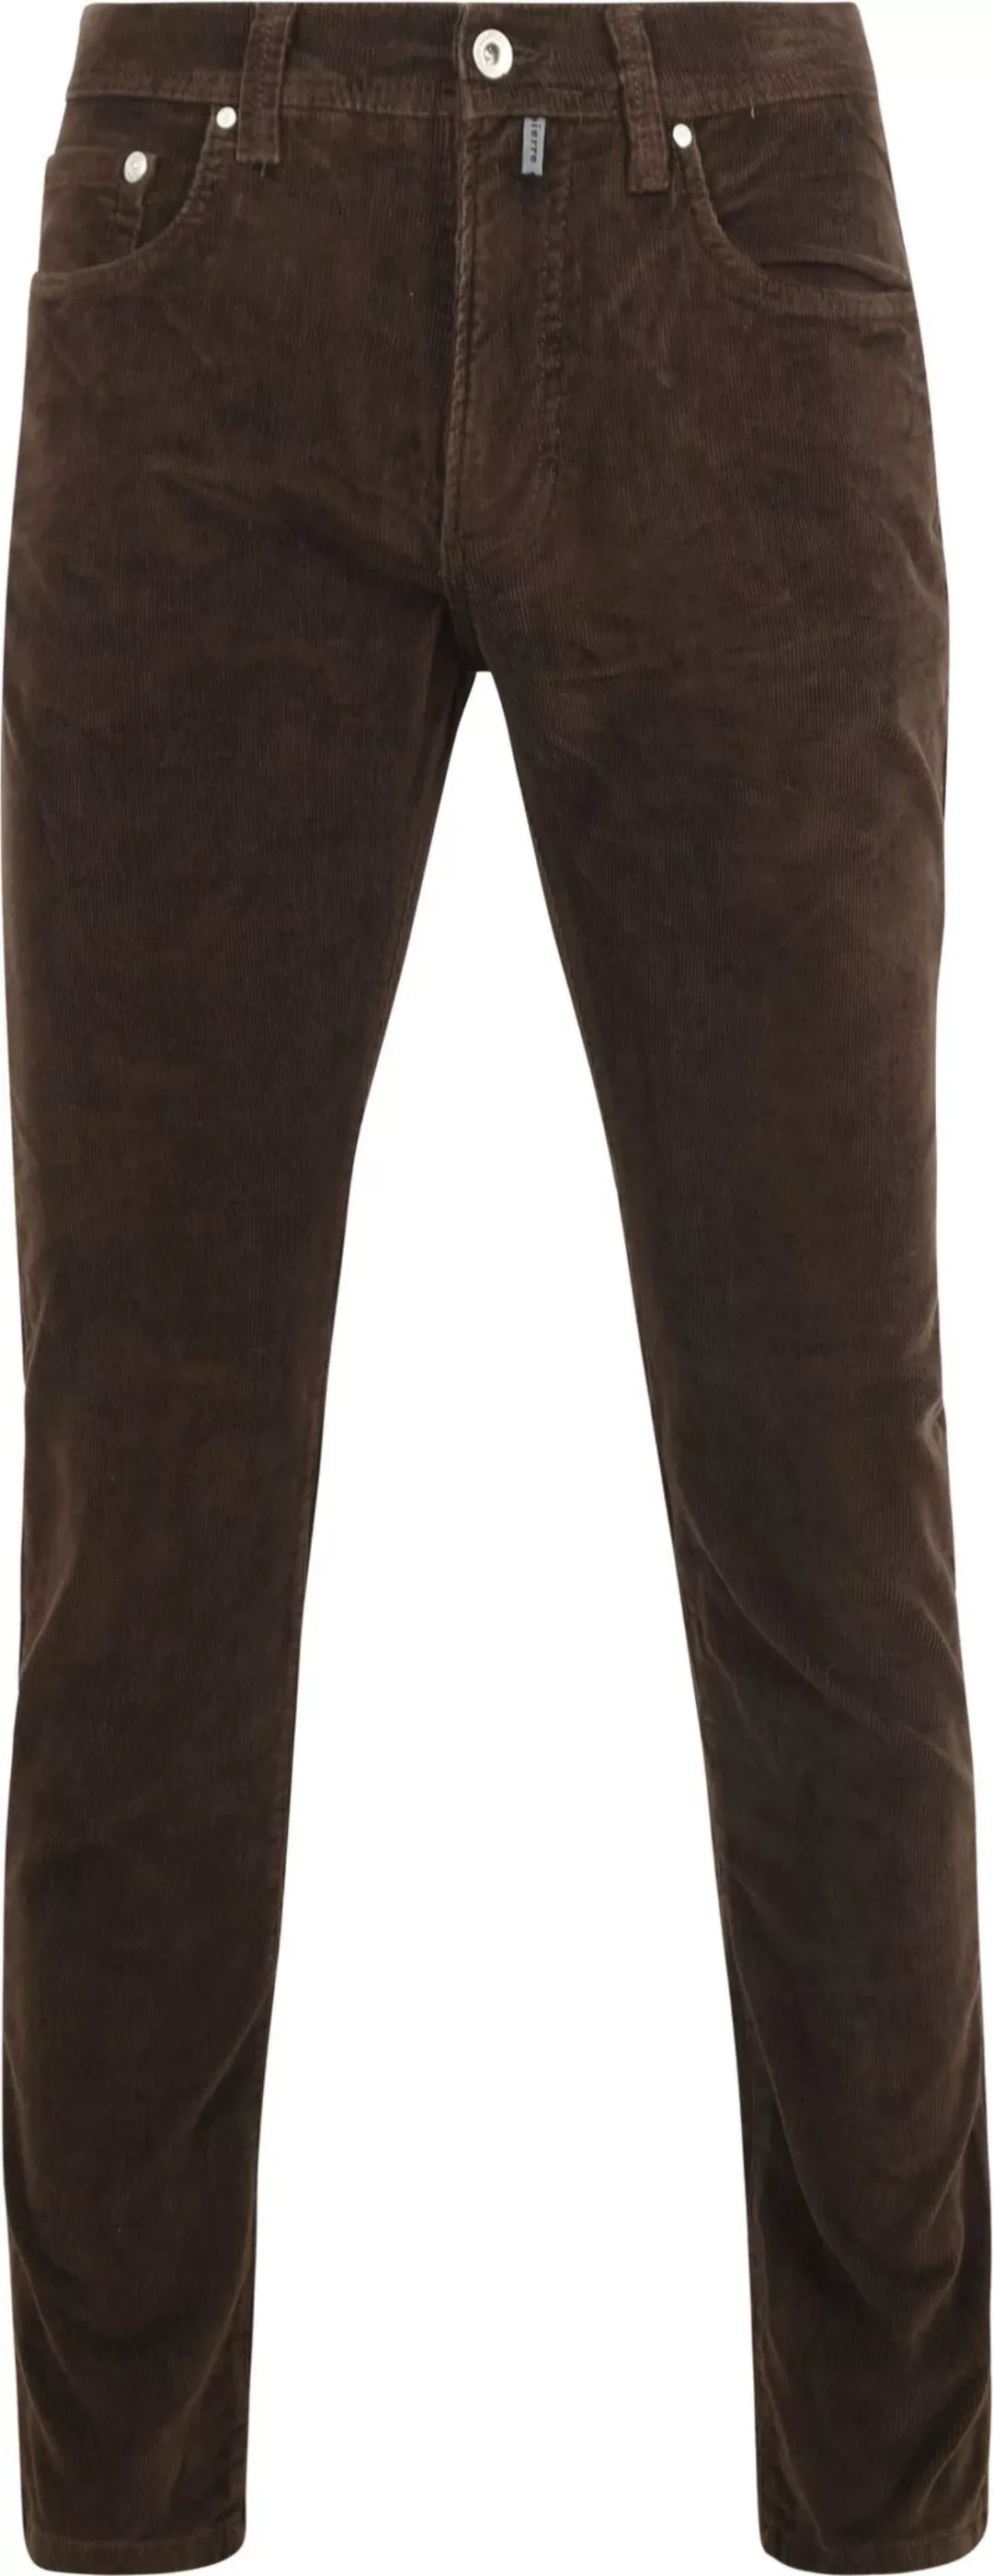 Pierre Cardin Trousers Lyon Future Flex Corduroy Braun - Größe W 34 - L 32 günstig online kaufen